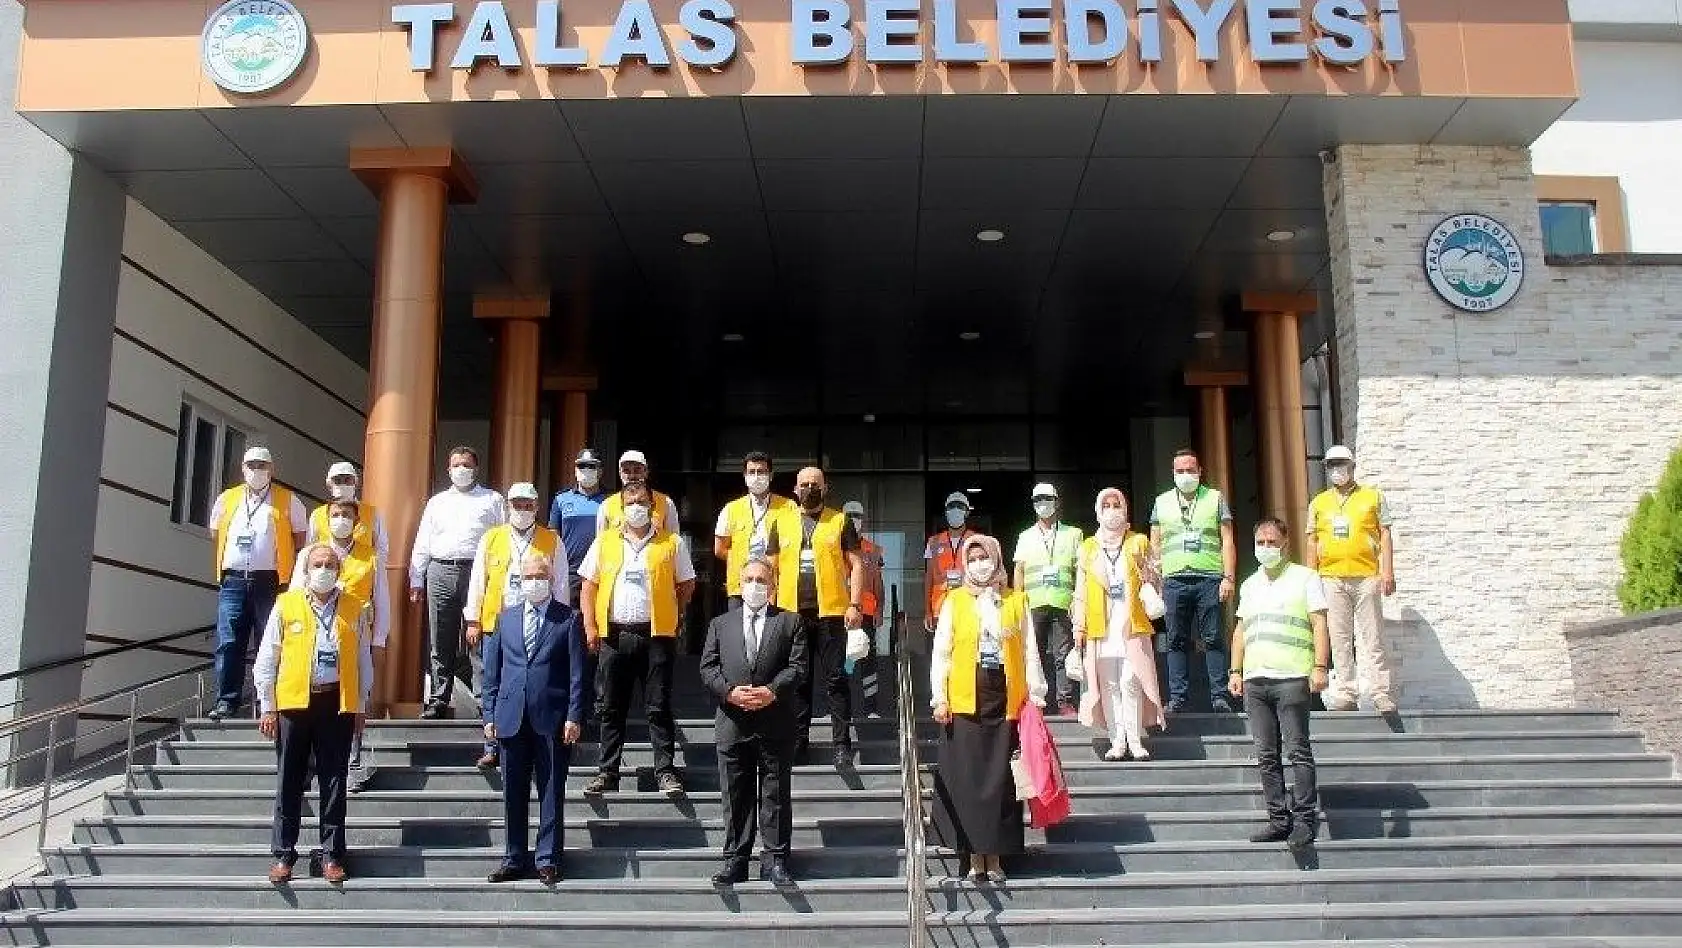 Talas Belediyesi'nden 'Pandemi yayılmasın kardeşlik yayılsın' projesi
